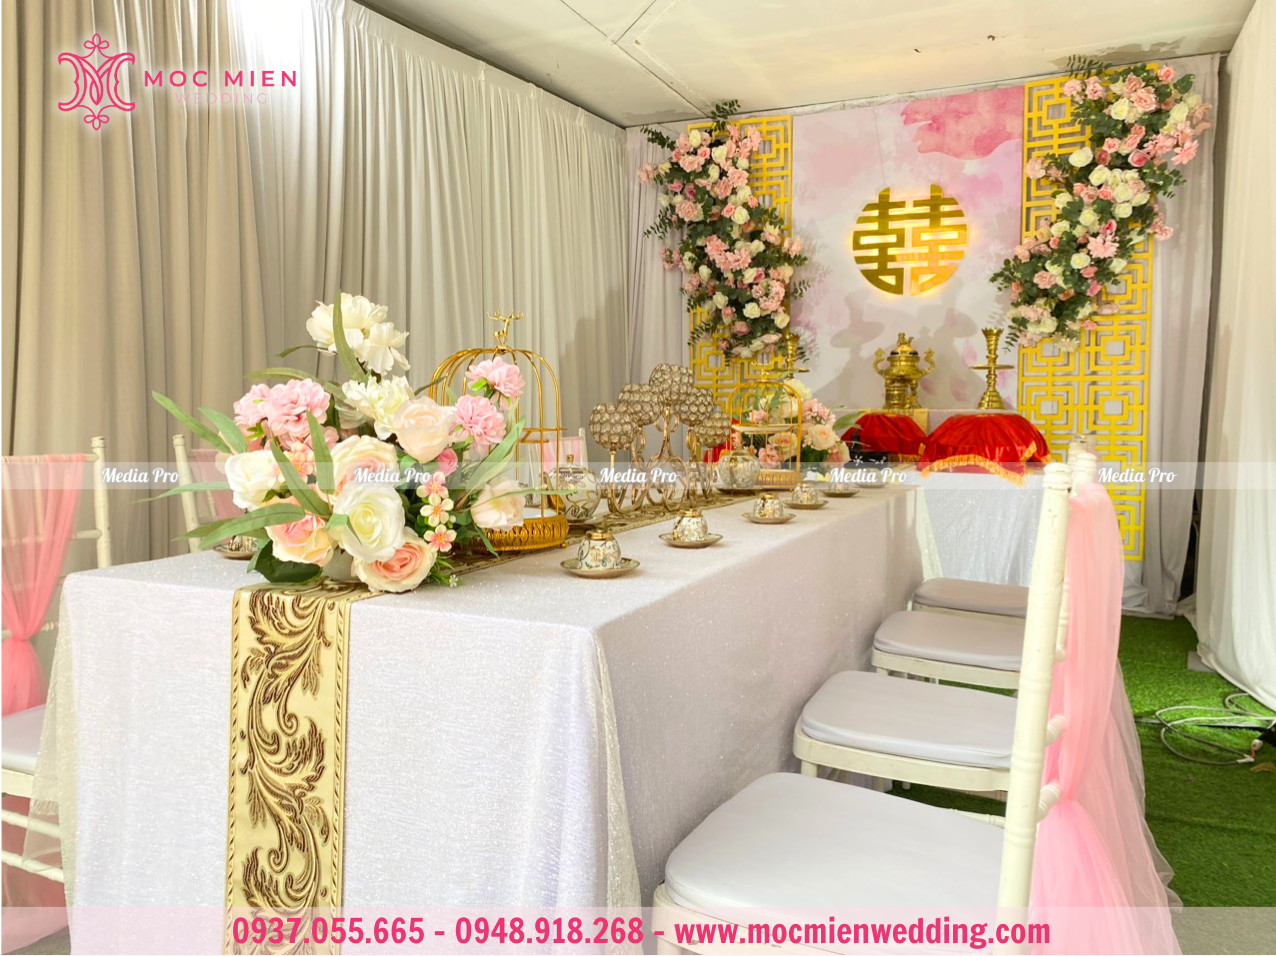 Trang trí bàn thờ gia tiên hoa lụa cao cấp tông màu trắng - hồng